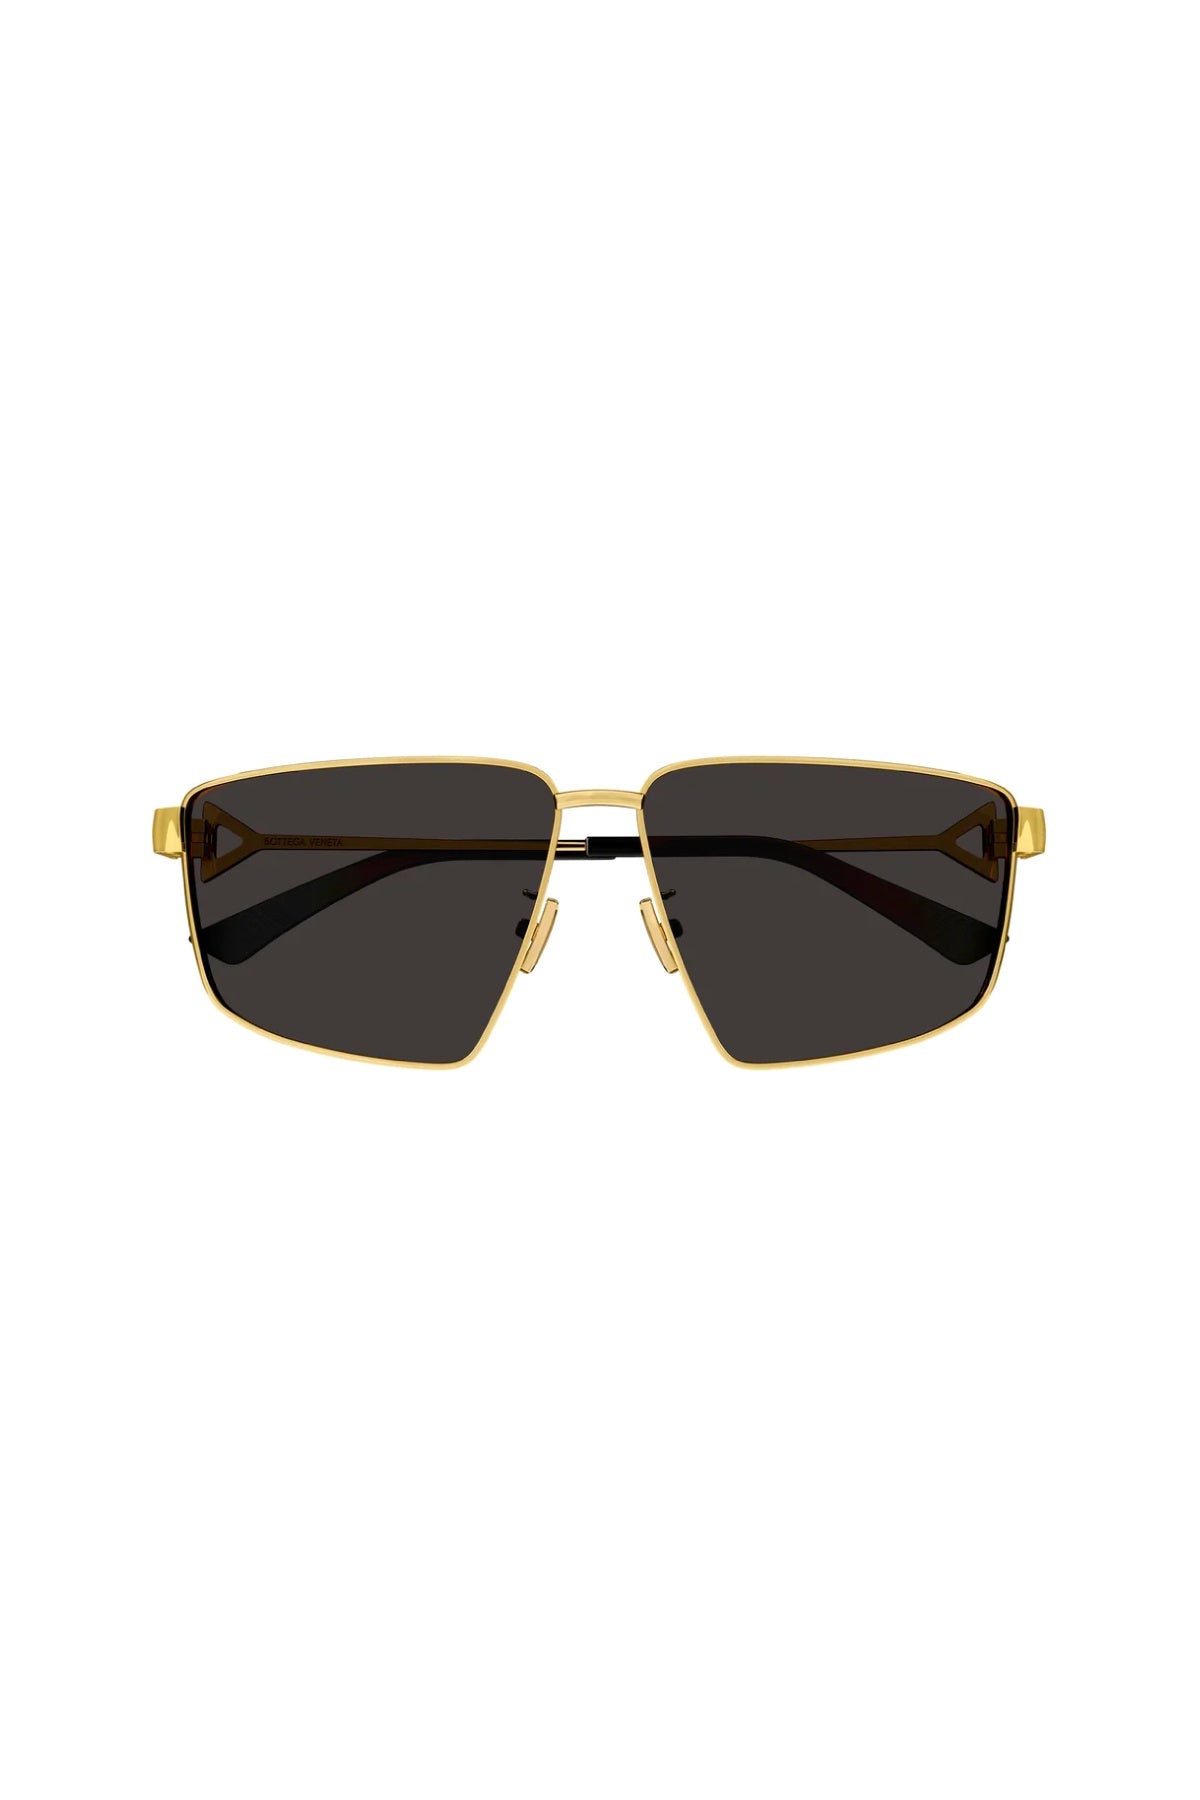 Bottega Veneta Square Aviator Sunglasses - Gold/ Black